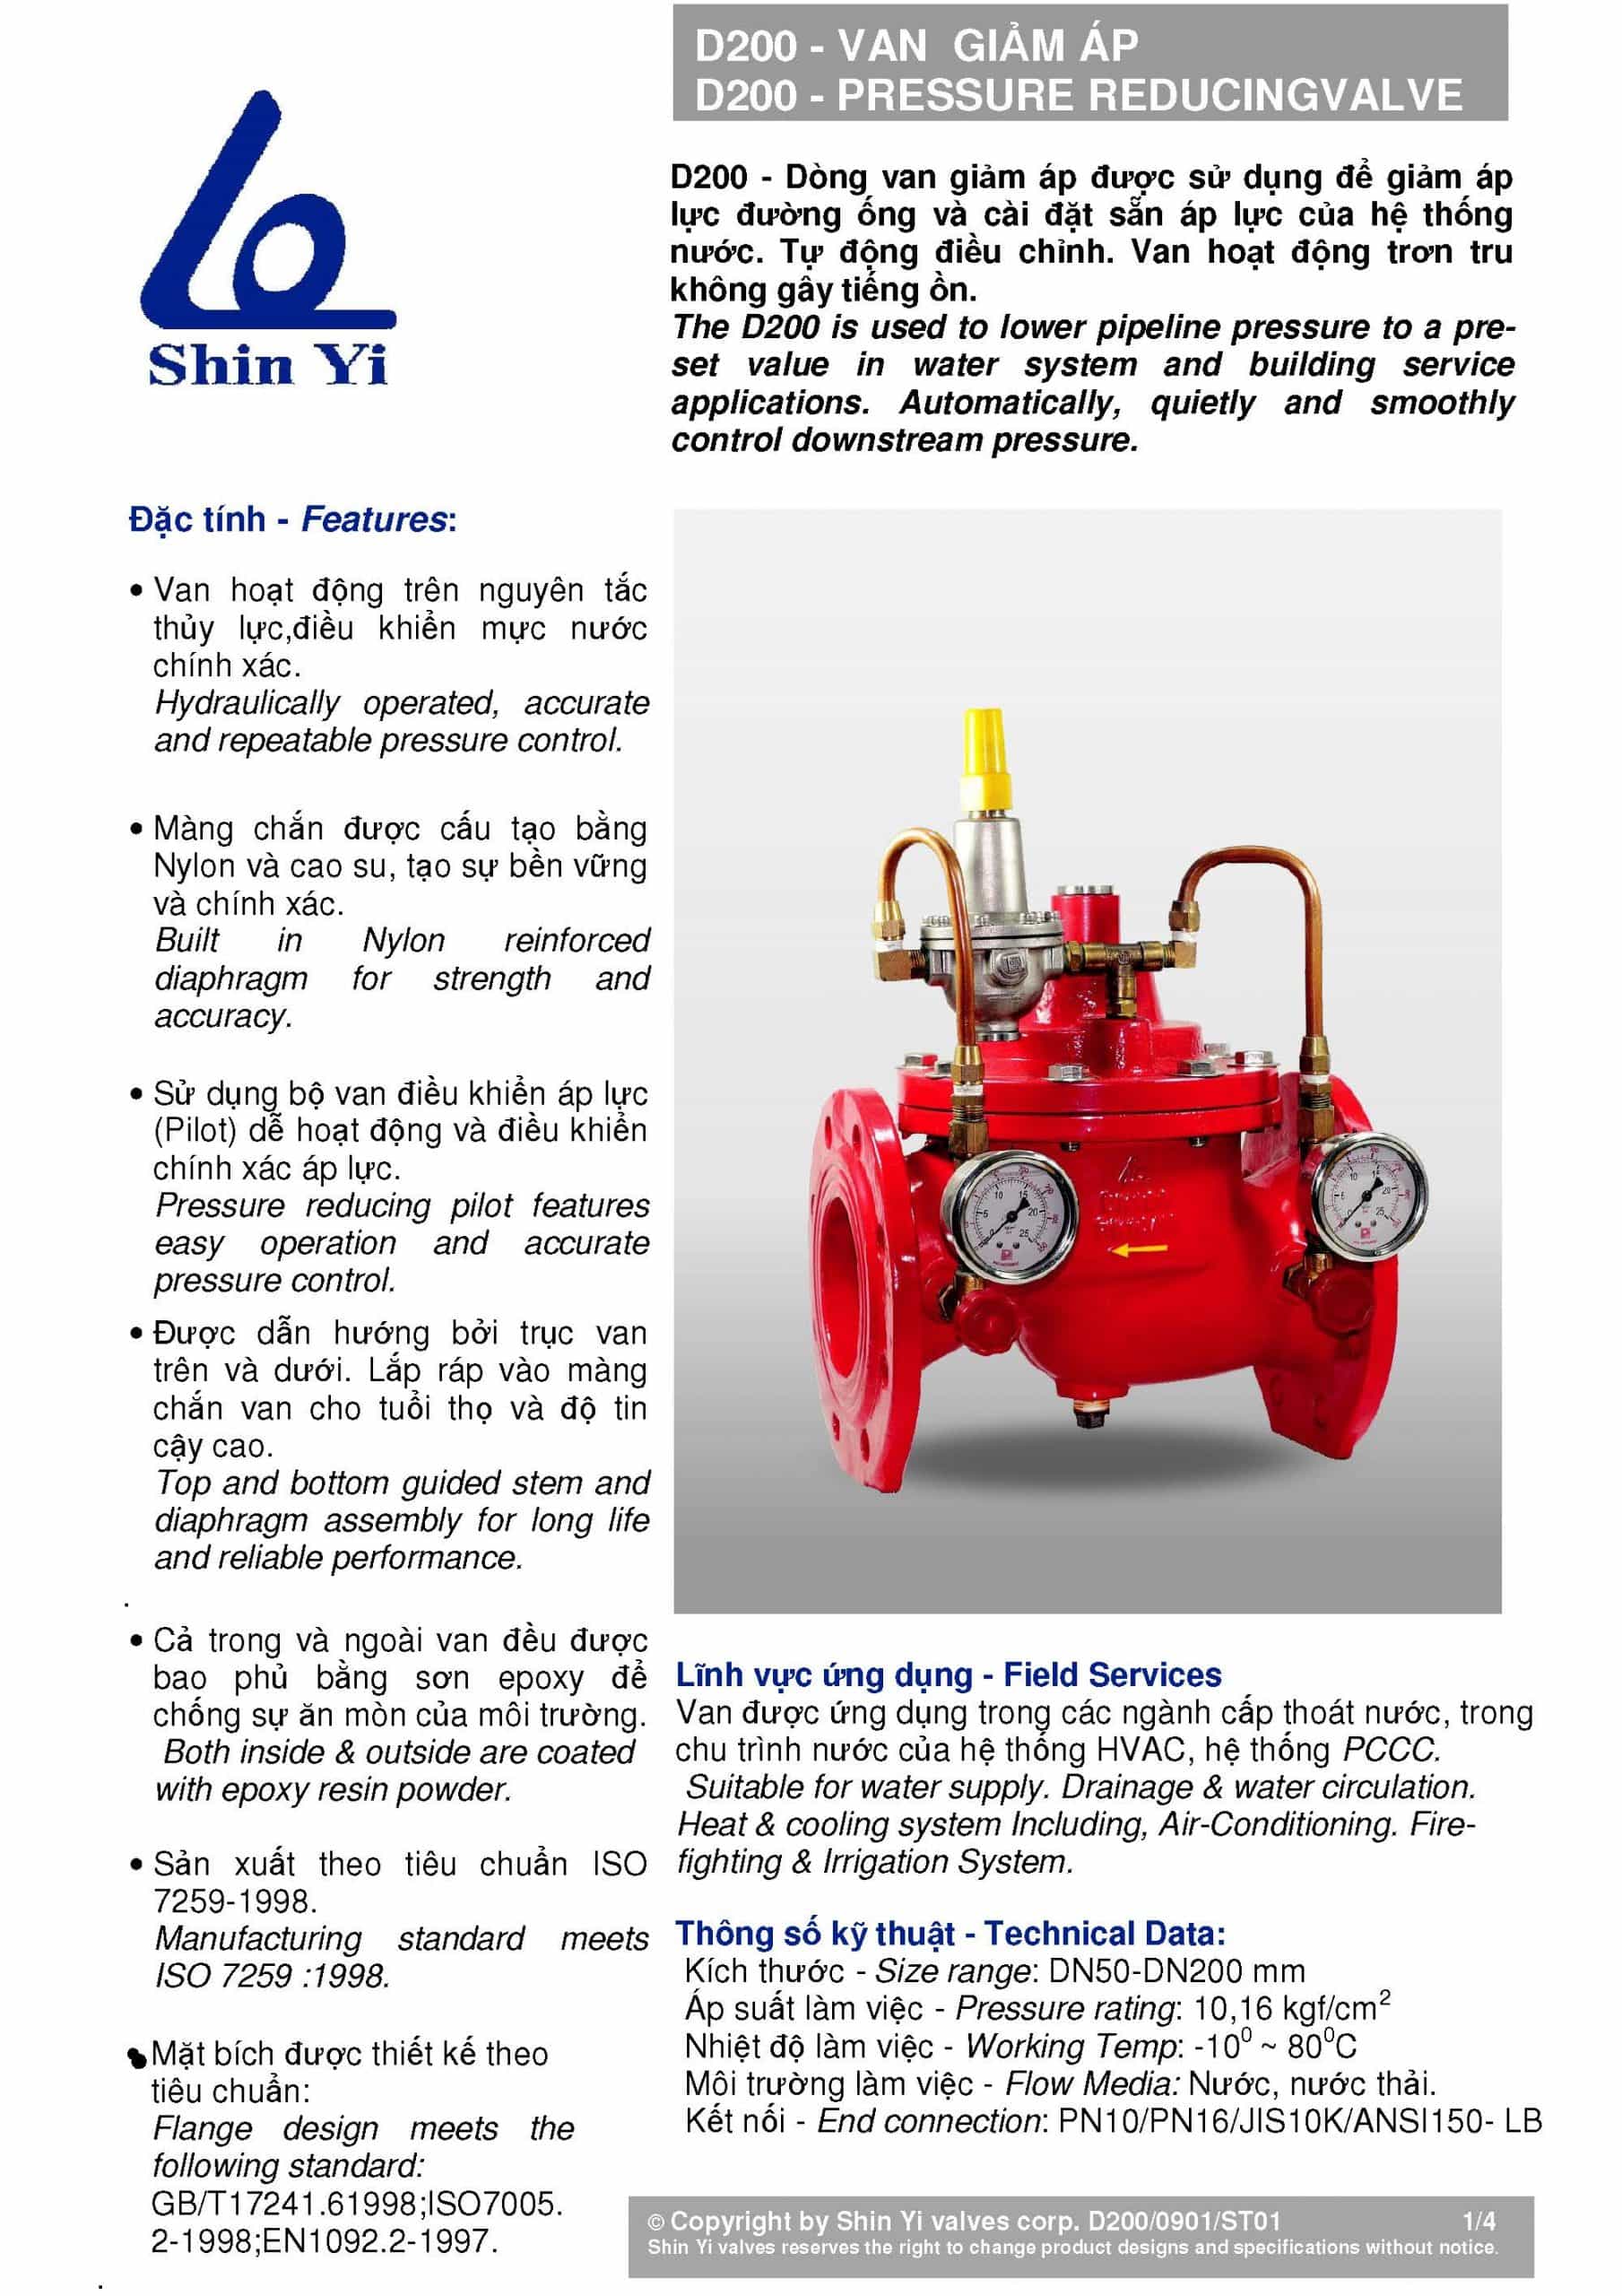 đặc tính Van giảm áp Shin Yi – Taiwan (pressure reducing valve)